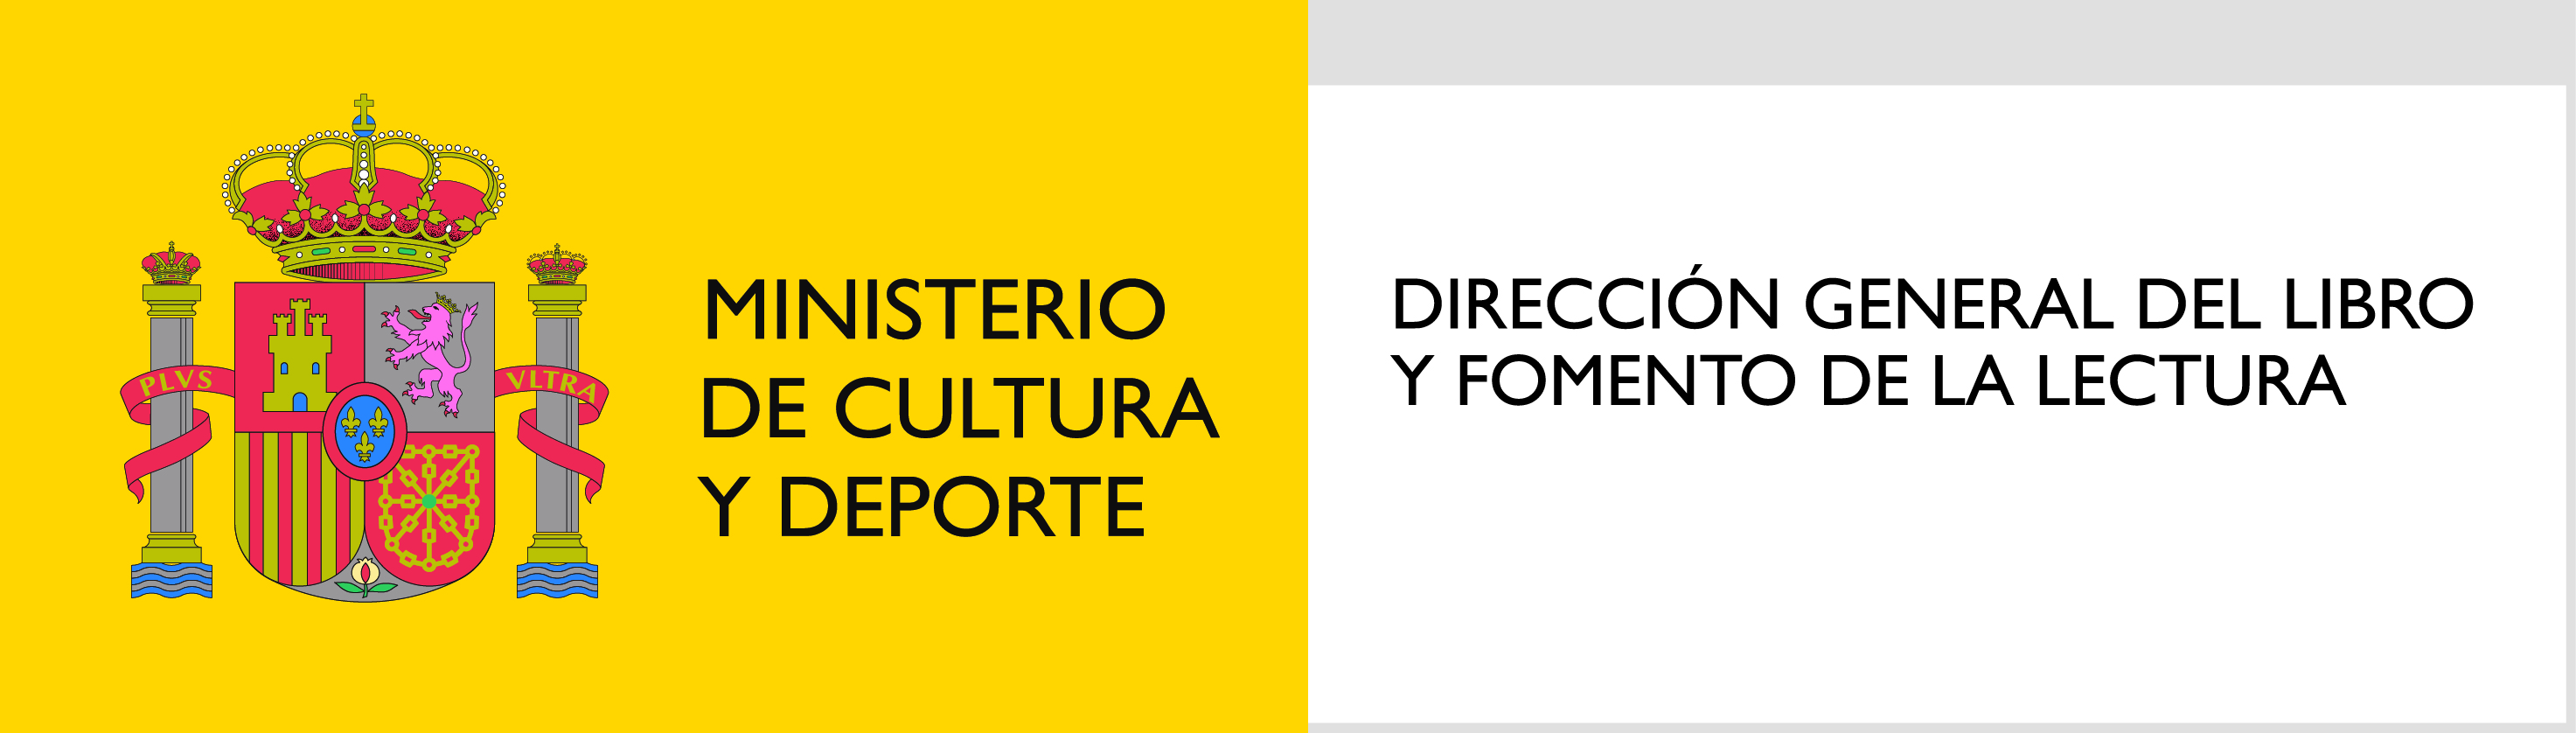 logo_minsiterio_cultura_y_deporte